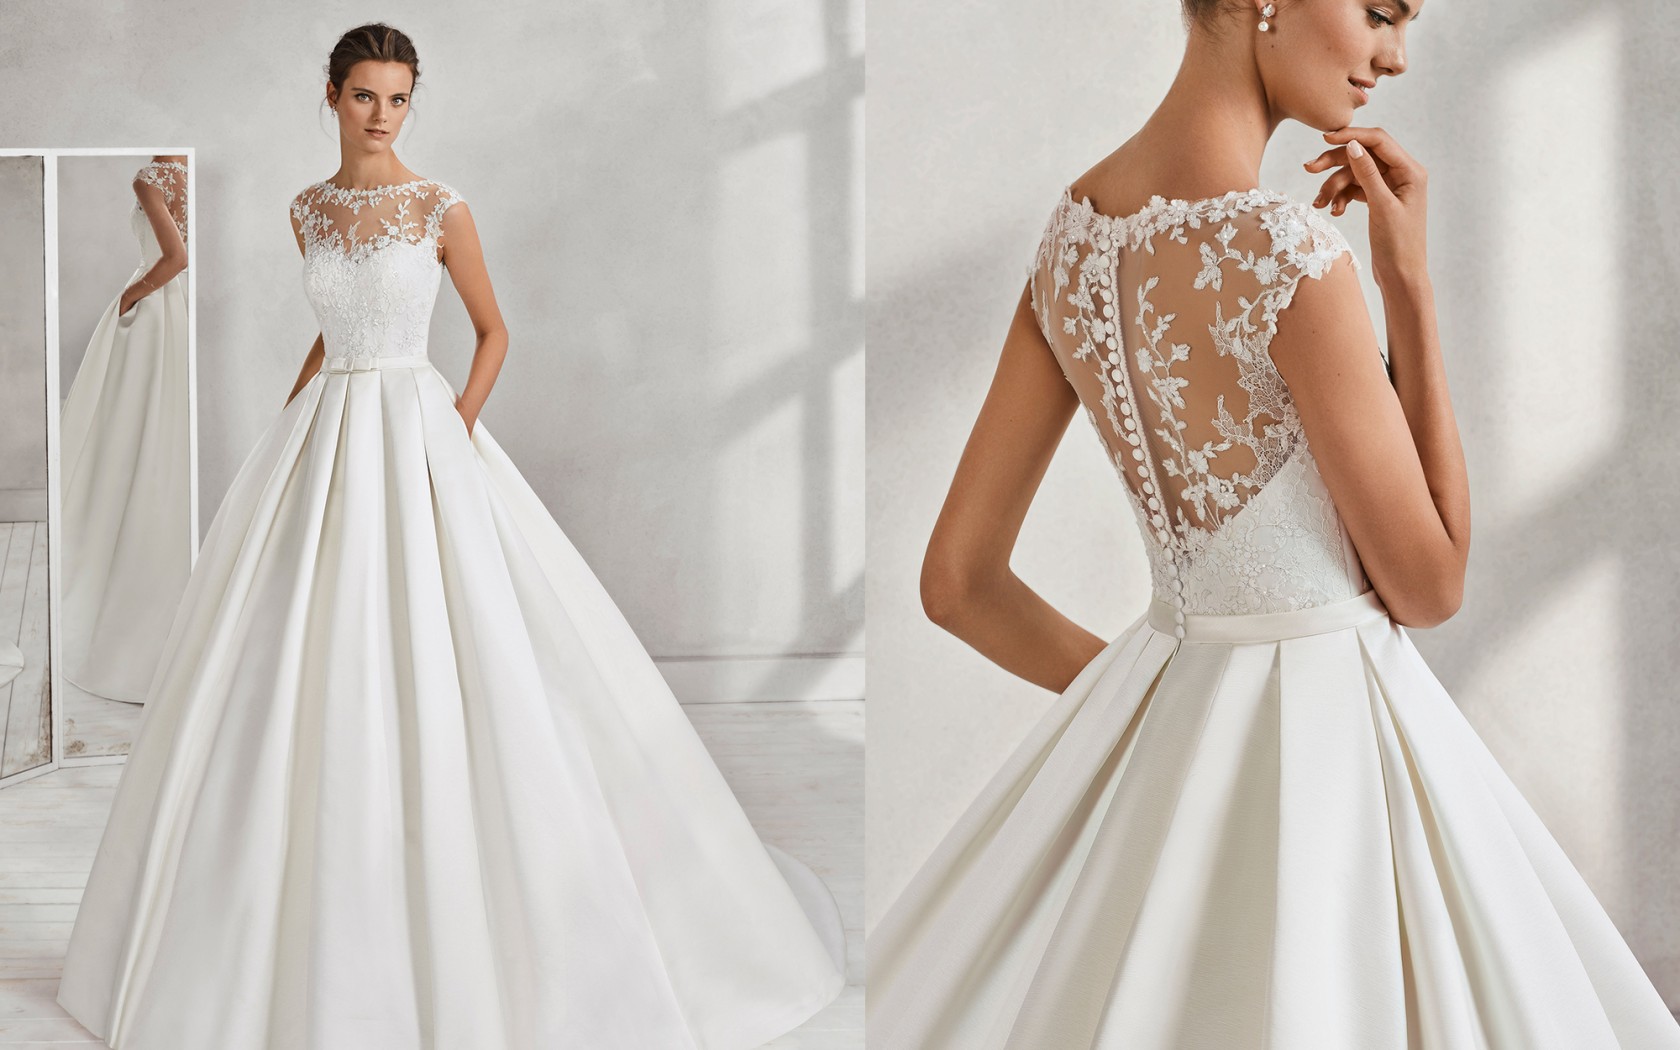 Massakre Charmerende Ordsprog Vælge den perfekte brudekjole - Inspirasjon-kjoler - My Wedding